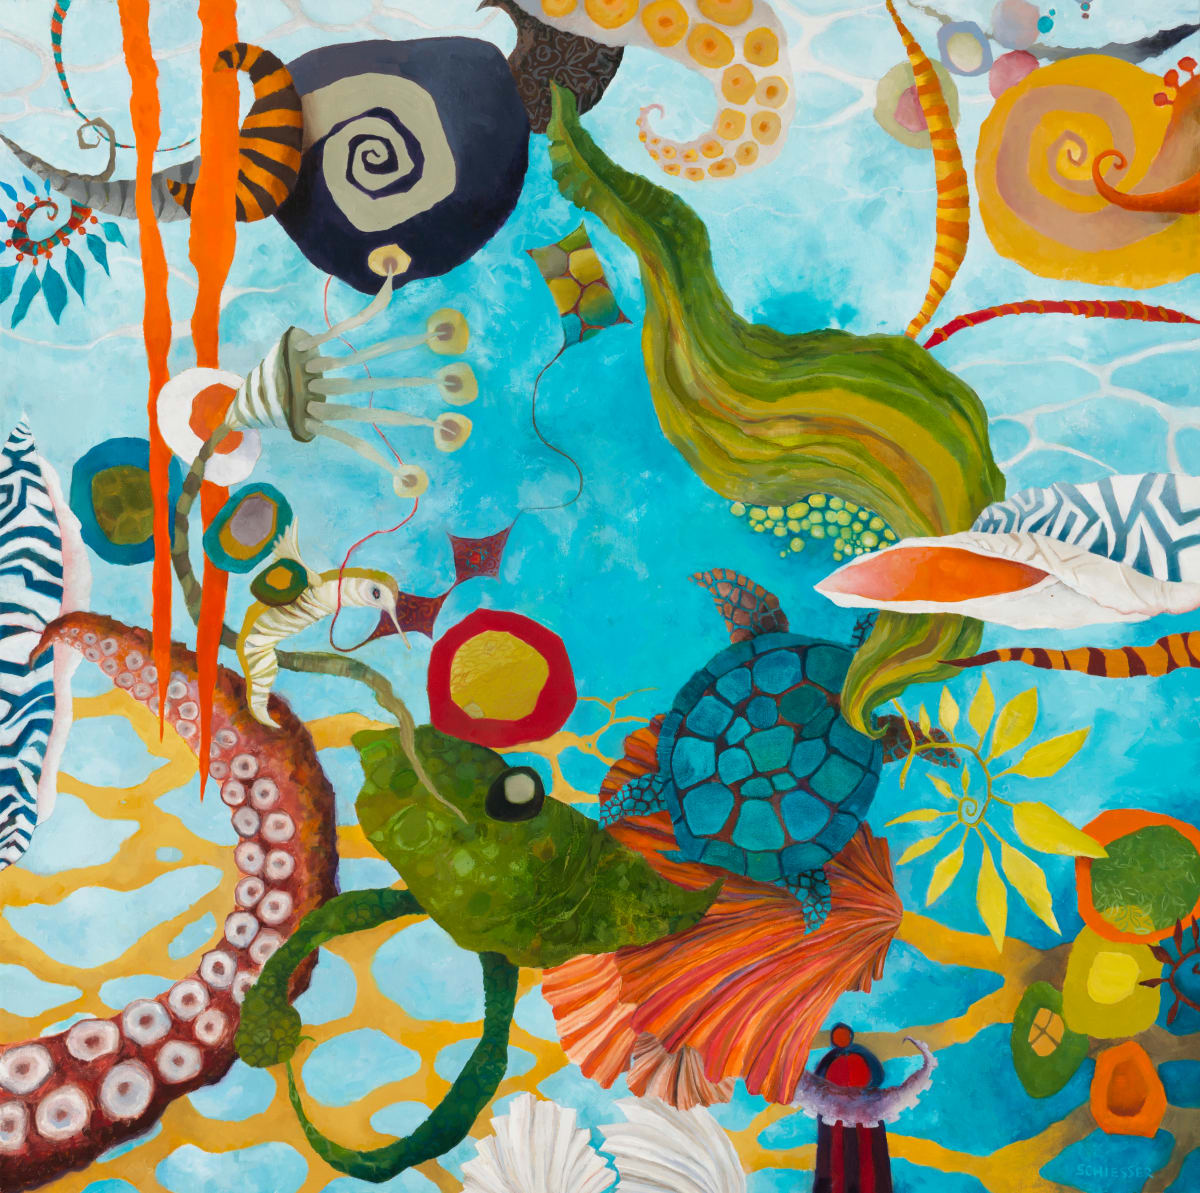 Octopus' Garden by Susan Schiesser 